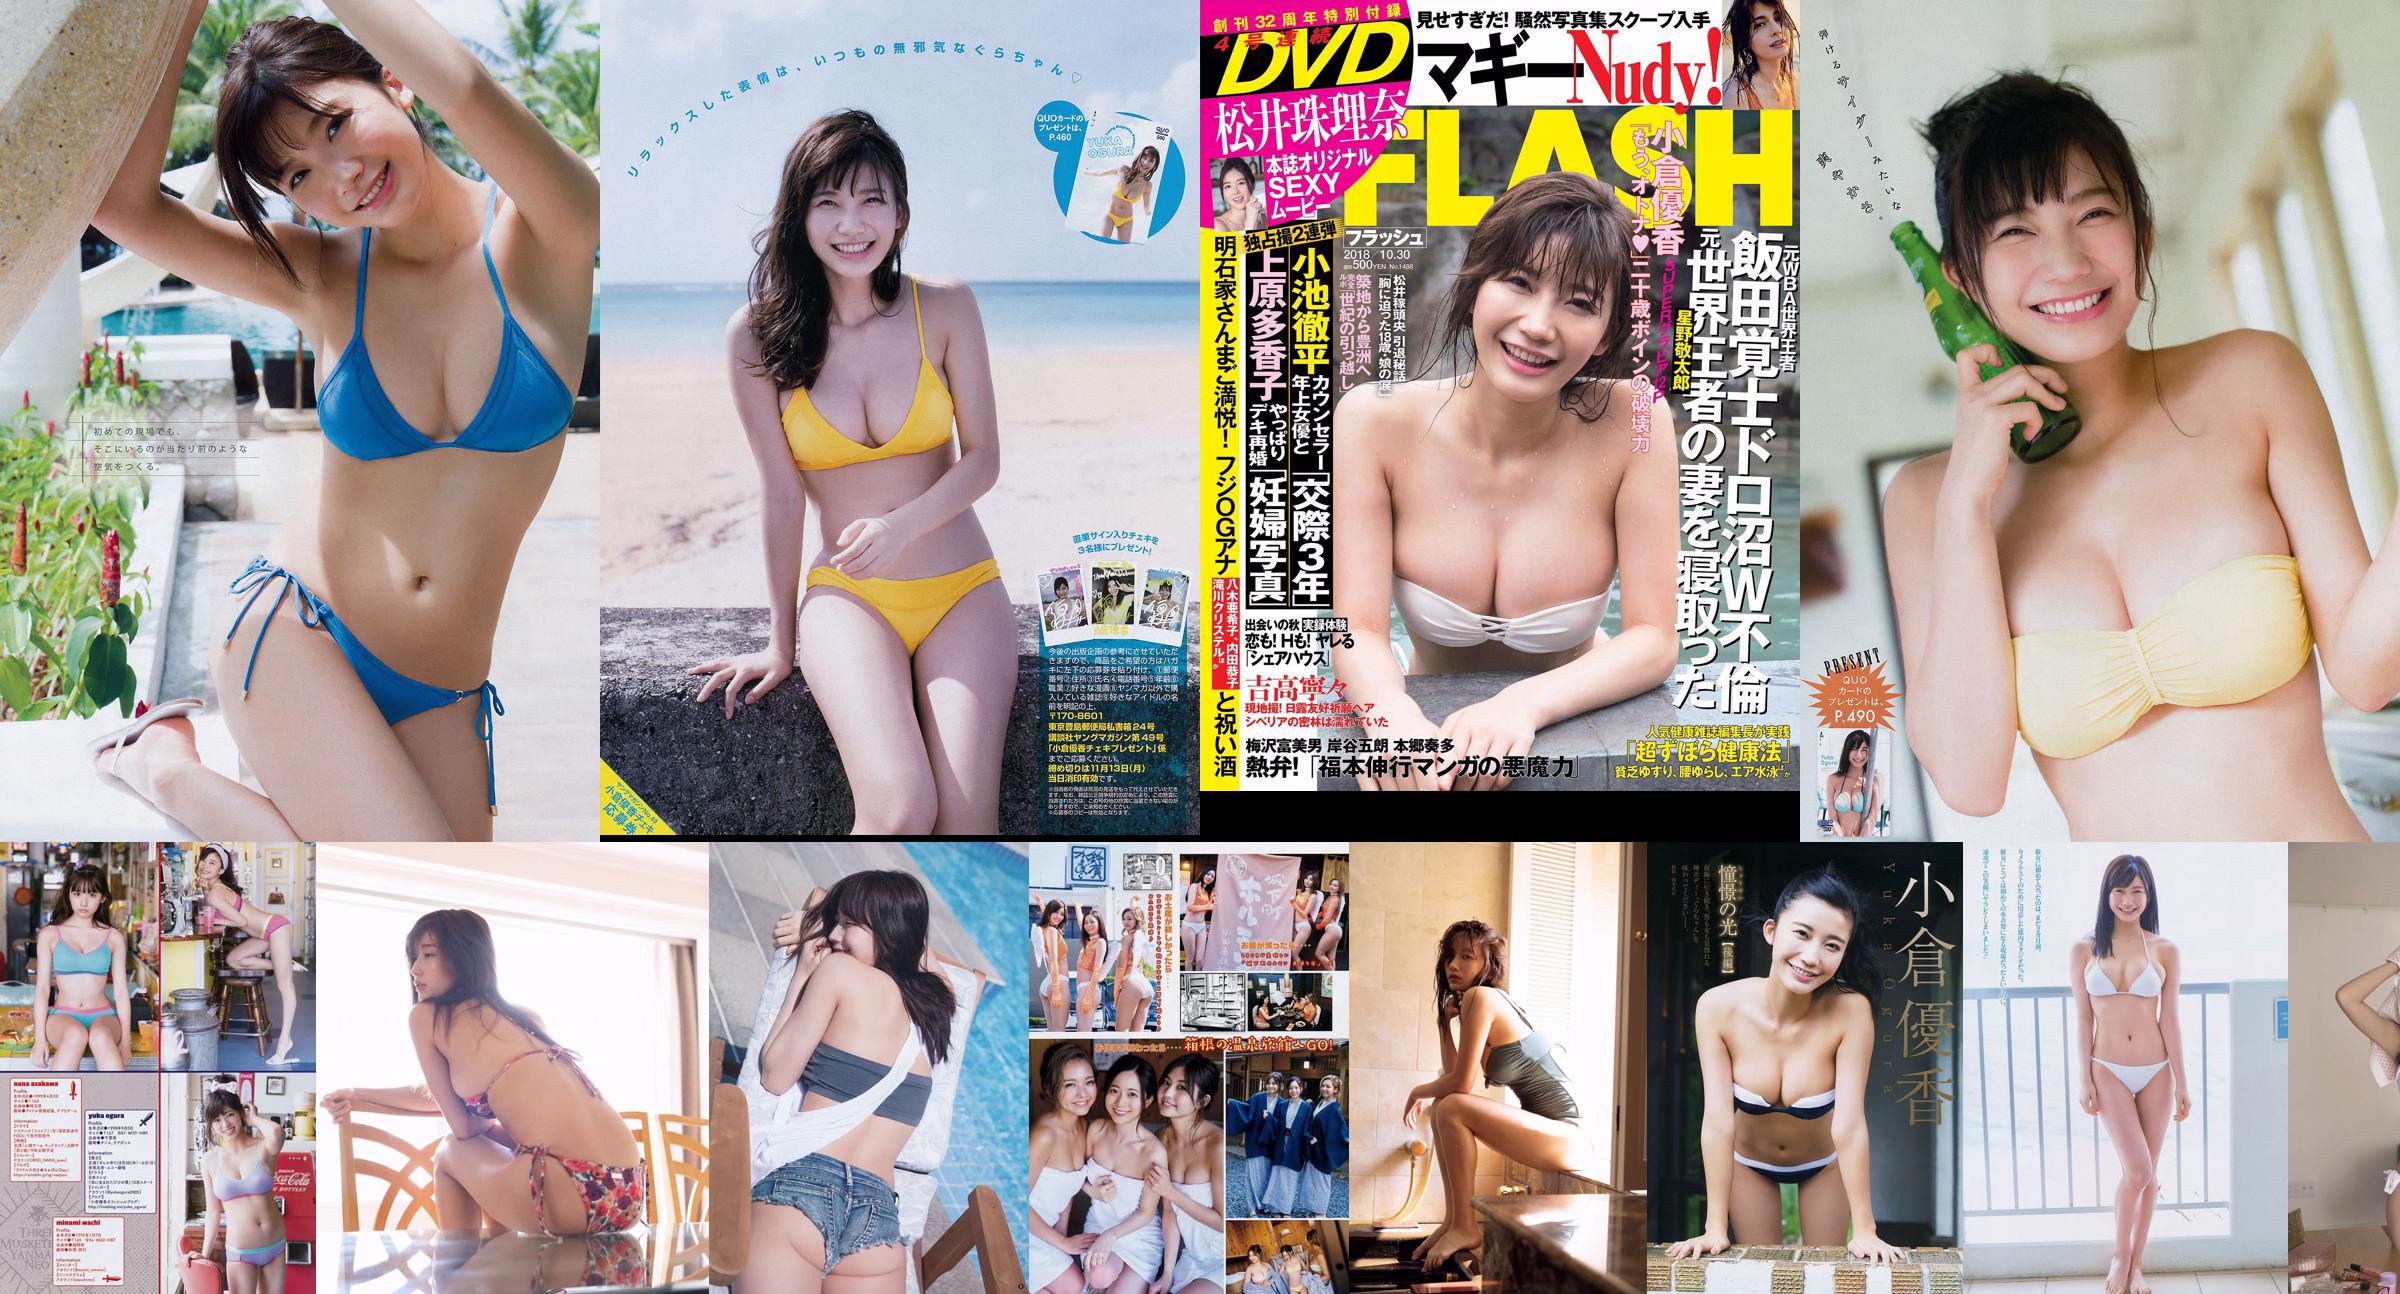 [FLASH] Yuka Ogura Mai Hakase Rina Asakawa Yuno Ohara Rie Kitahara 2018.08.21-28 Foto No.e29e1c Seite 5